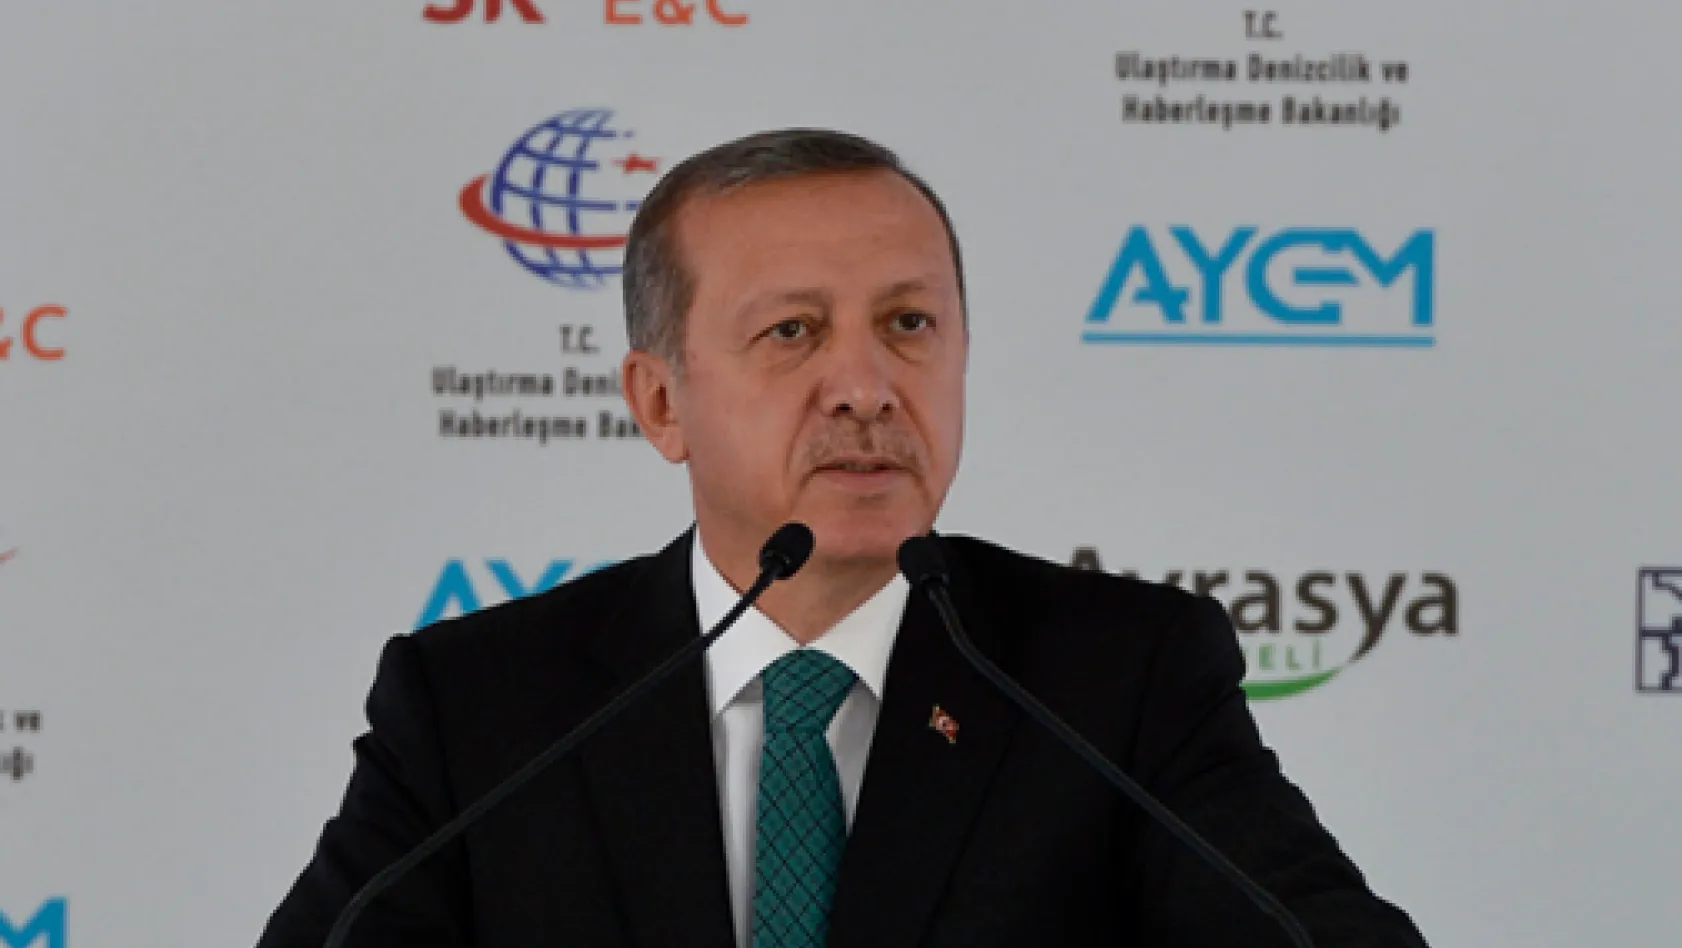 Tarihi projenin temelini Erdoğan attı